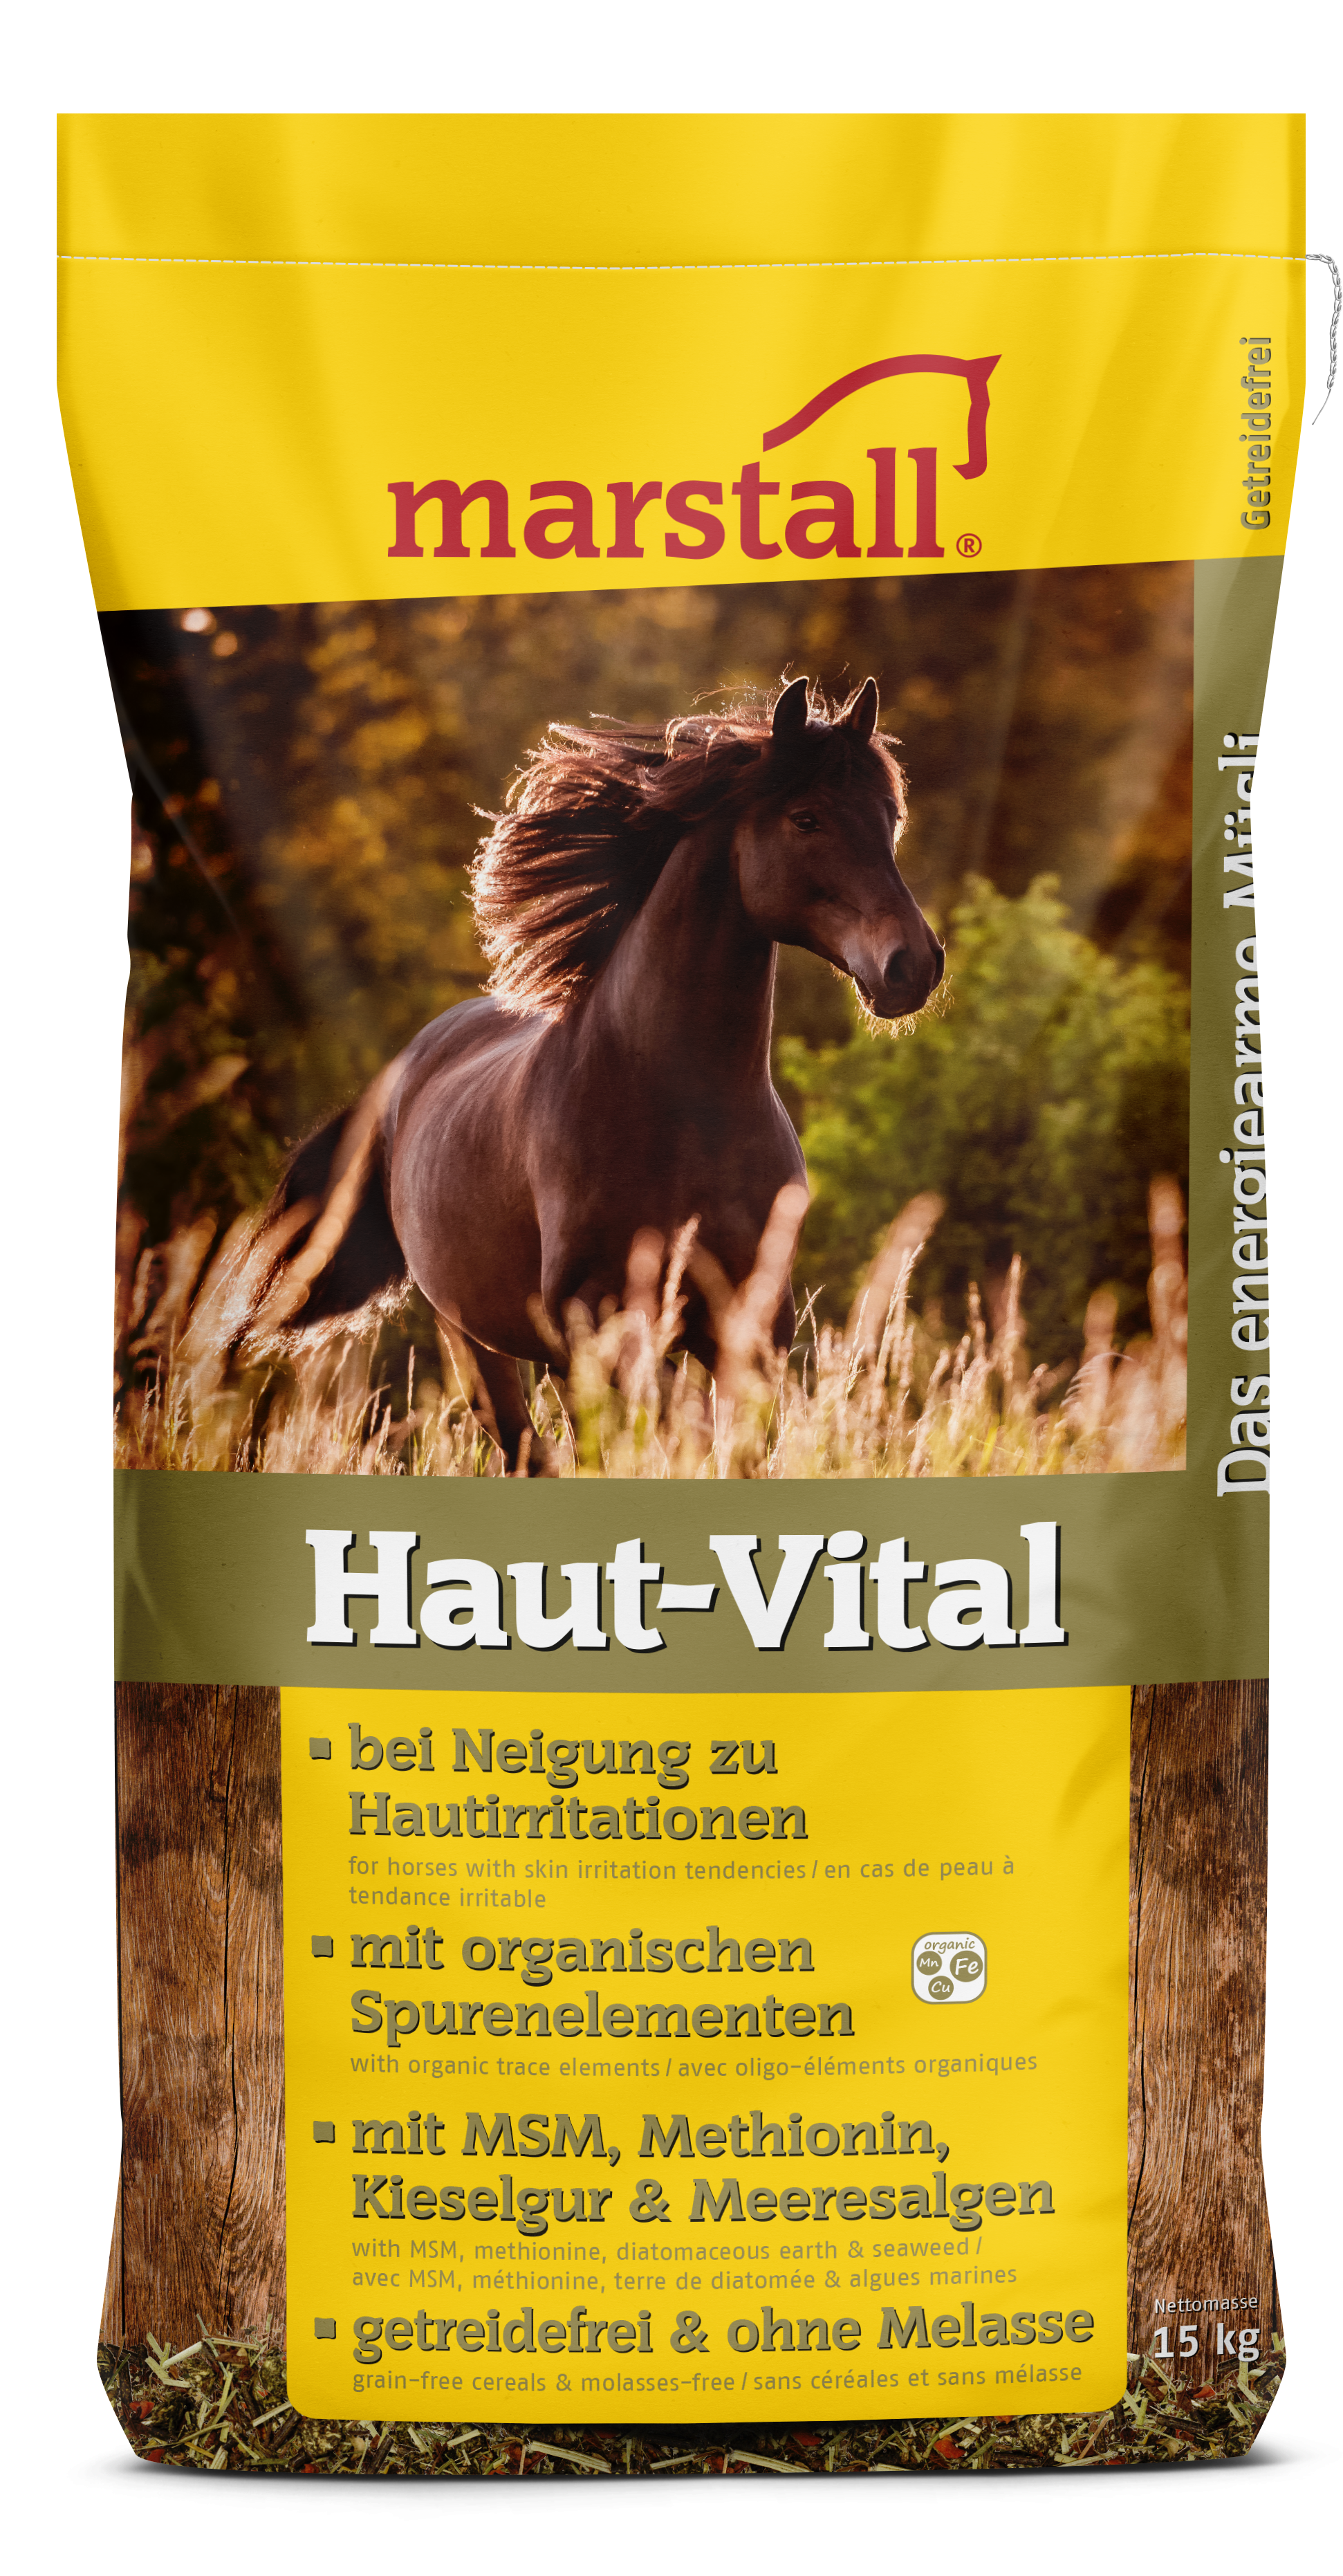 marstall - Haut-Vital - getreidefreies und energiearmes Müsli zur Unterstützung hautsensibler Pferde